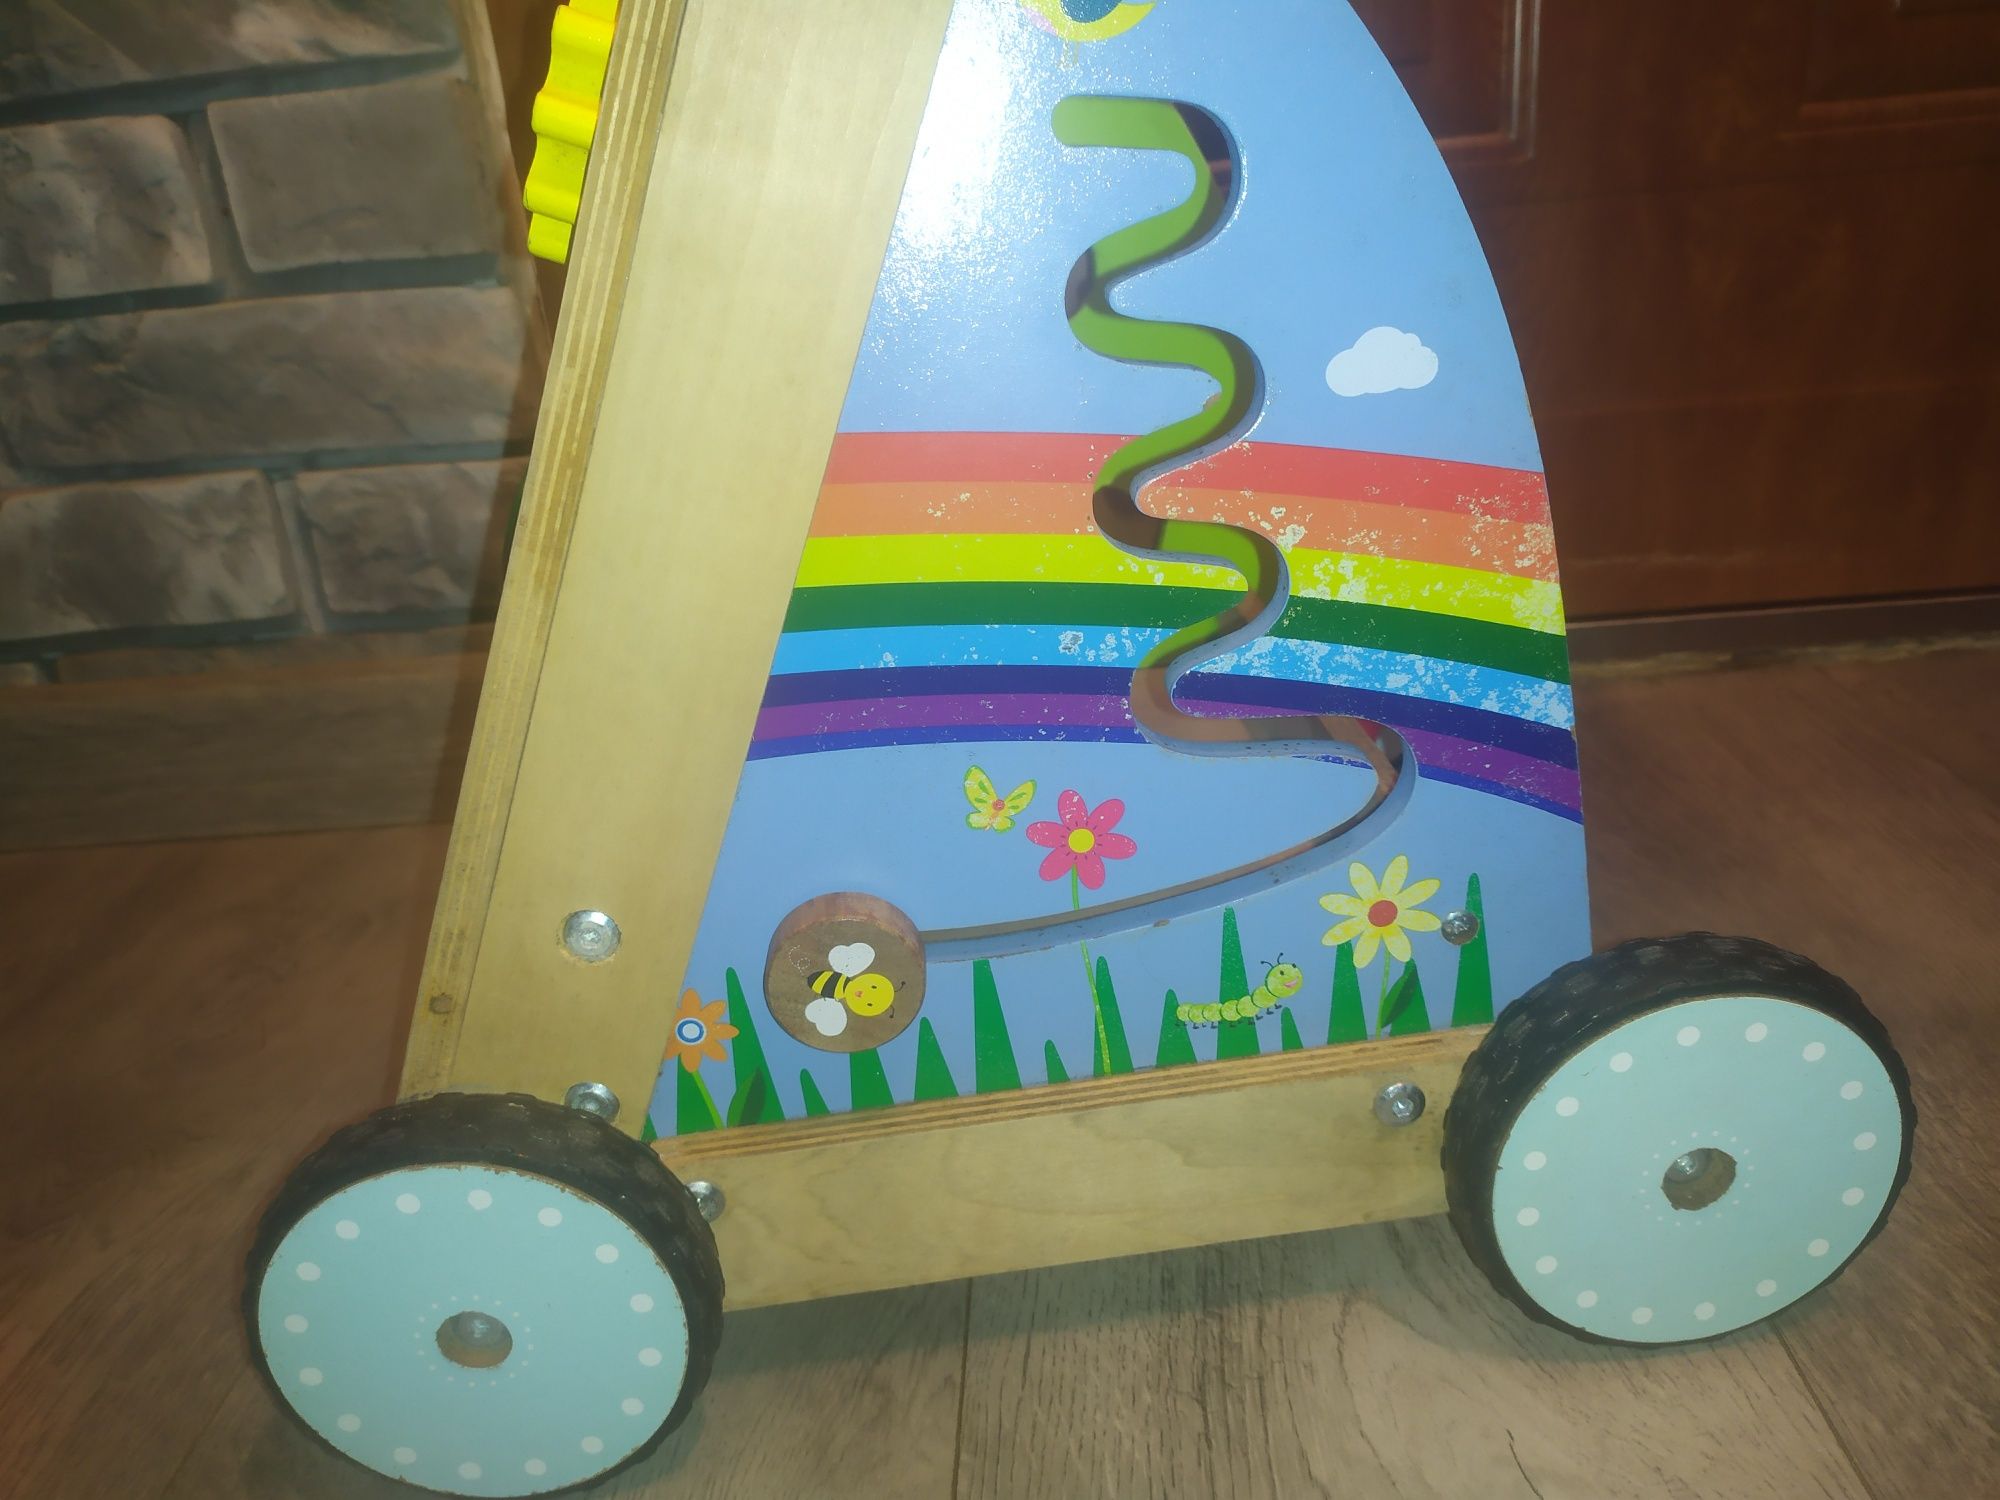 Playtive duży wózek pchacz chodzik, zabawka drewniana interaktywna